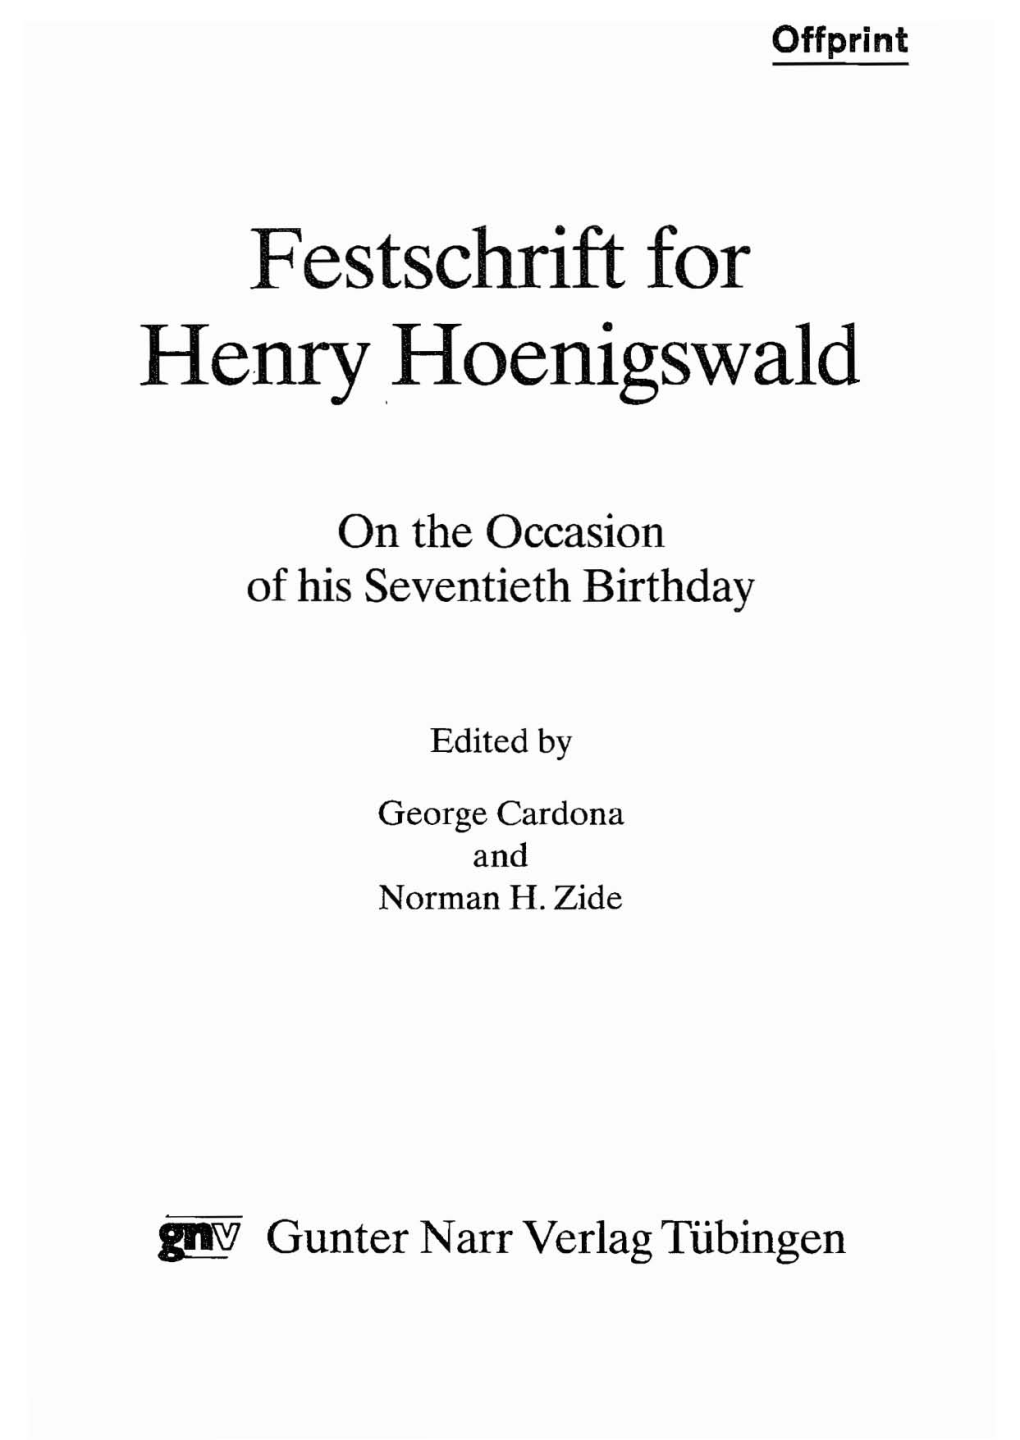 Festschrift for Henryhoenigswald